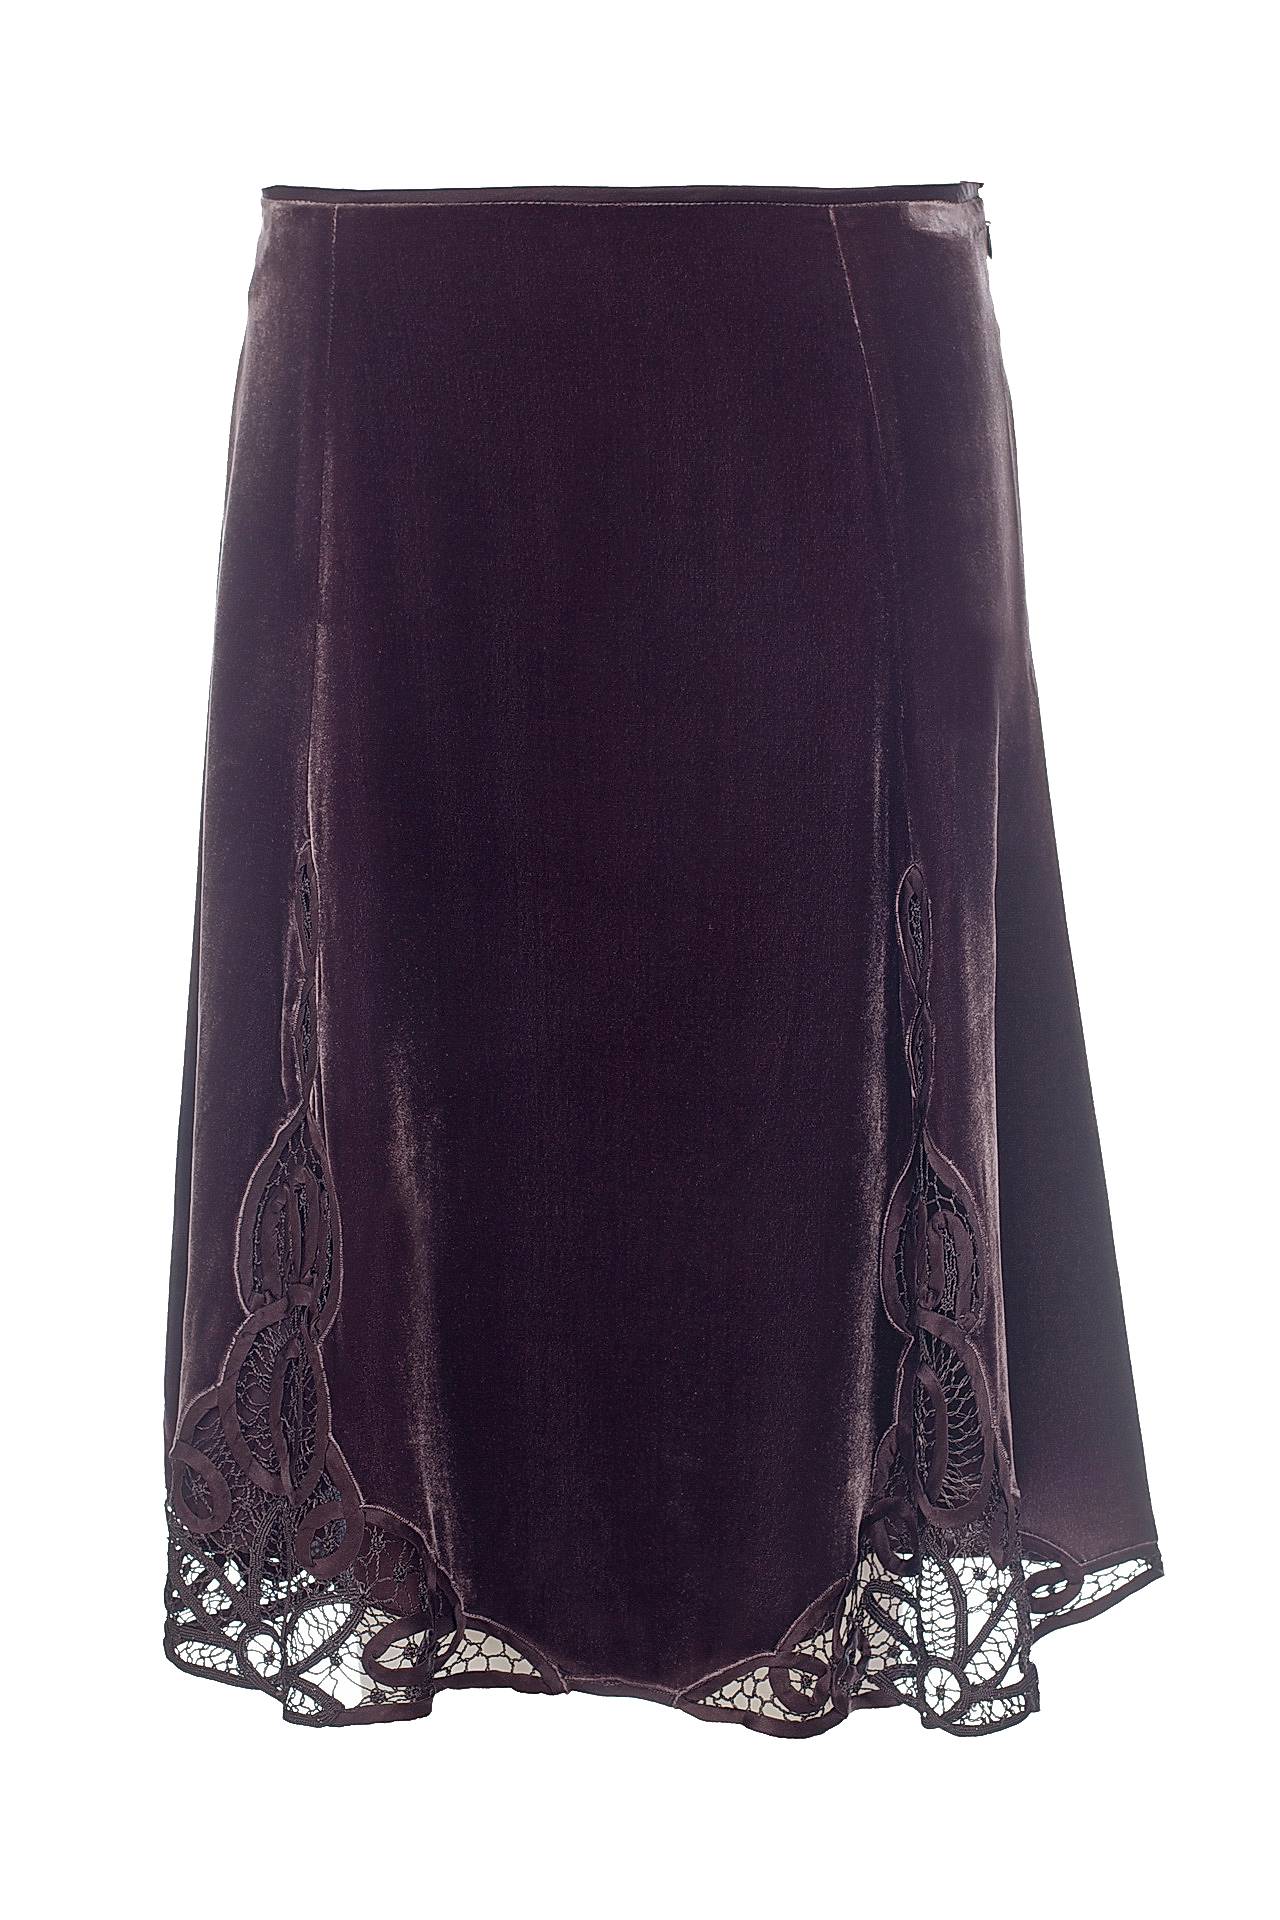 Одежда женская Юбка NOUGAT LONDON (NG5306/27). Купить за 9160 руб.